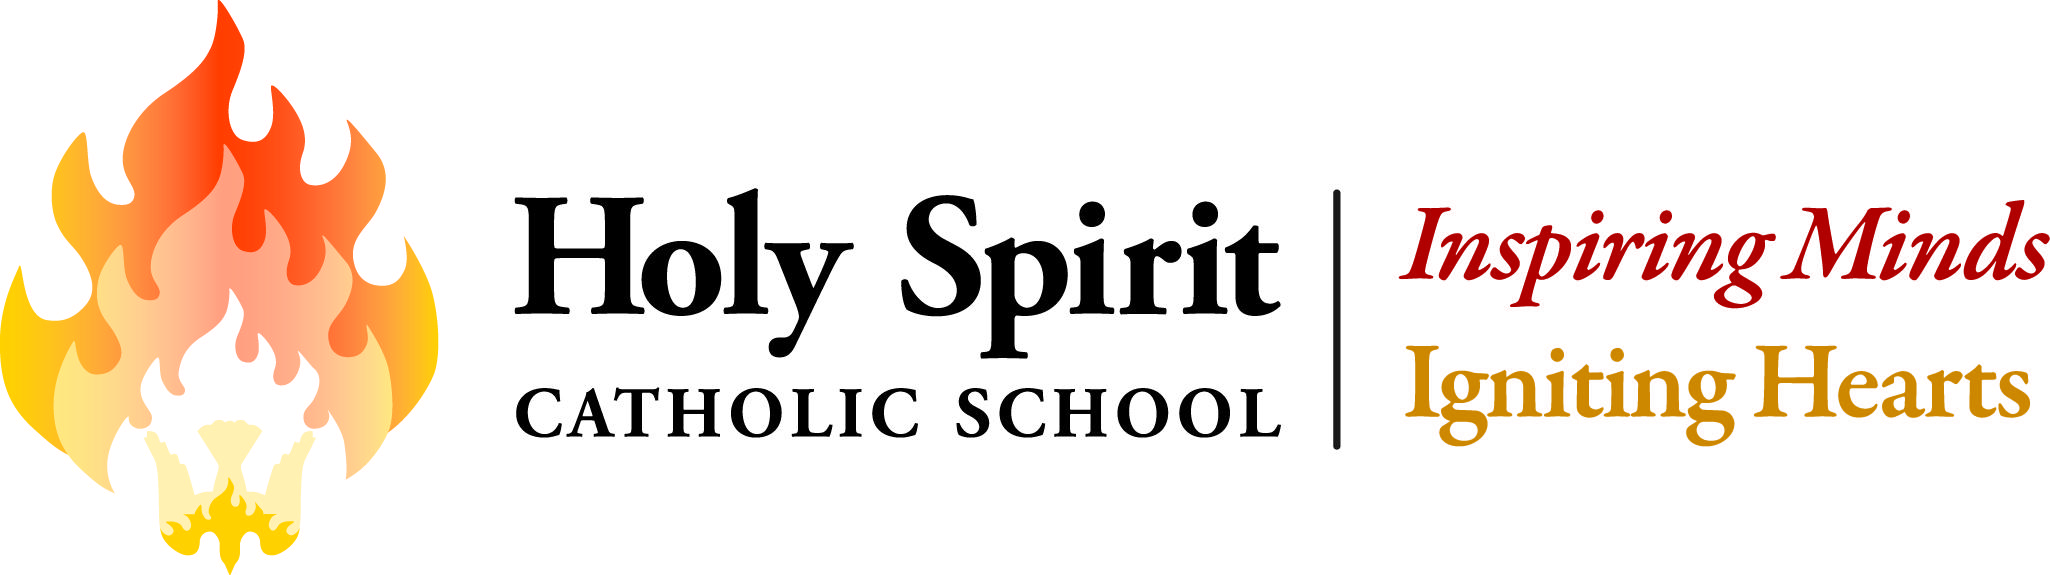 Holy Spirit School Louisville Logo - Tuition Spirit School